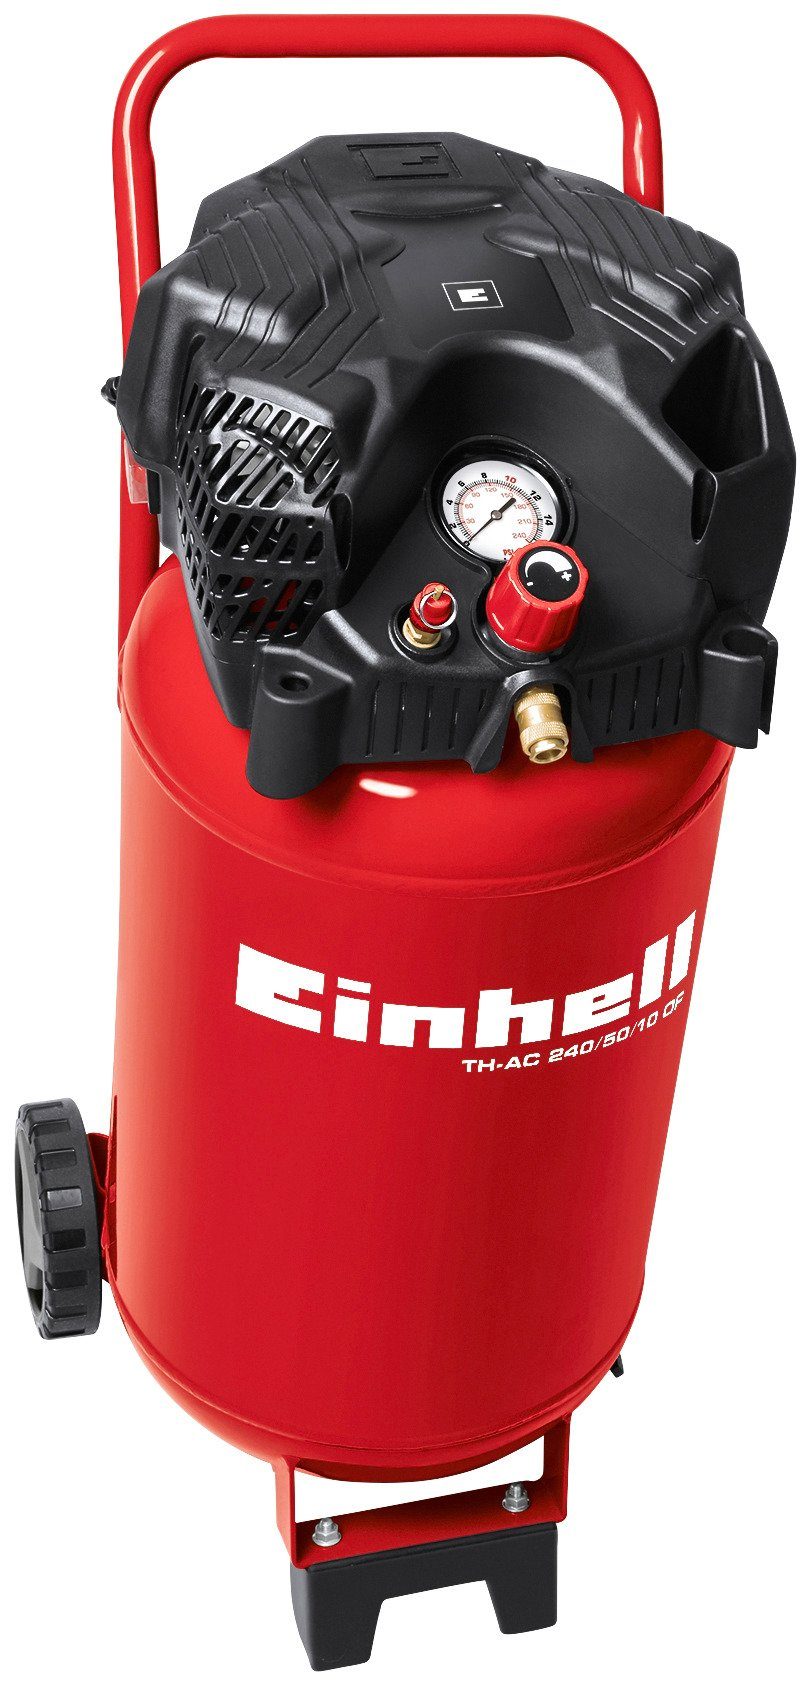 Einhell Kompressor TH-AC 240/50/10 W, OF, 1500 bar, 10 50 l max